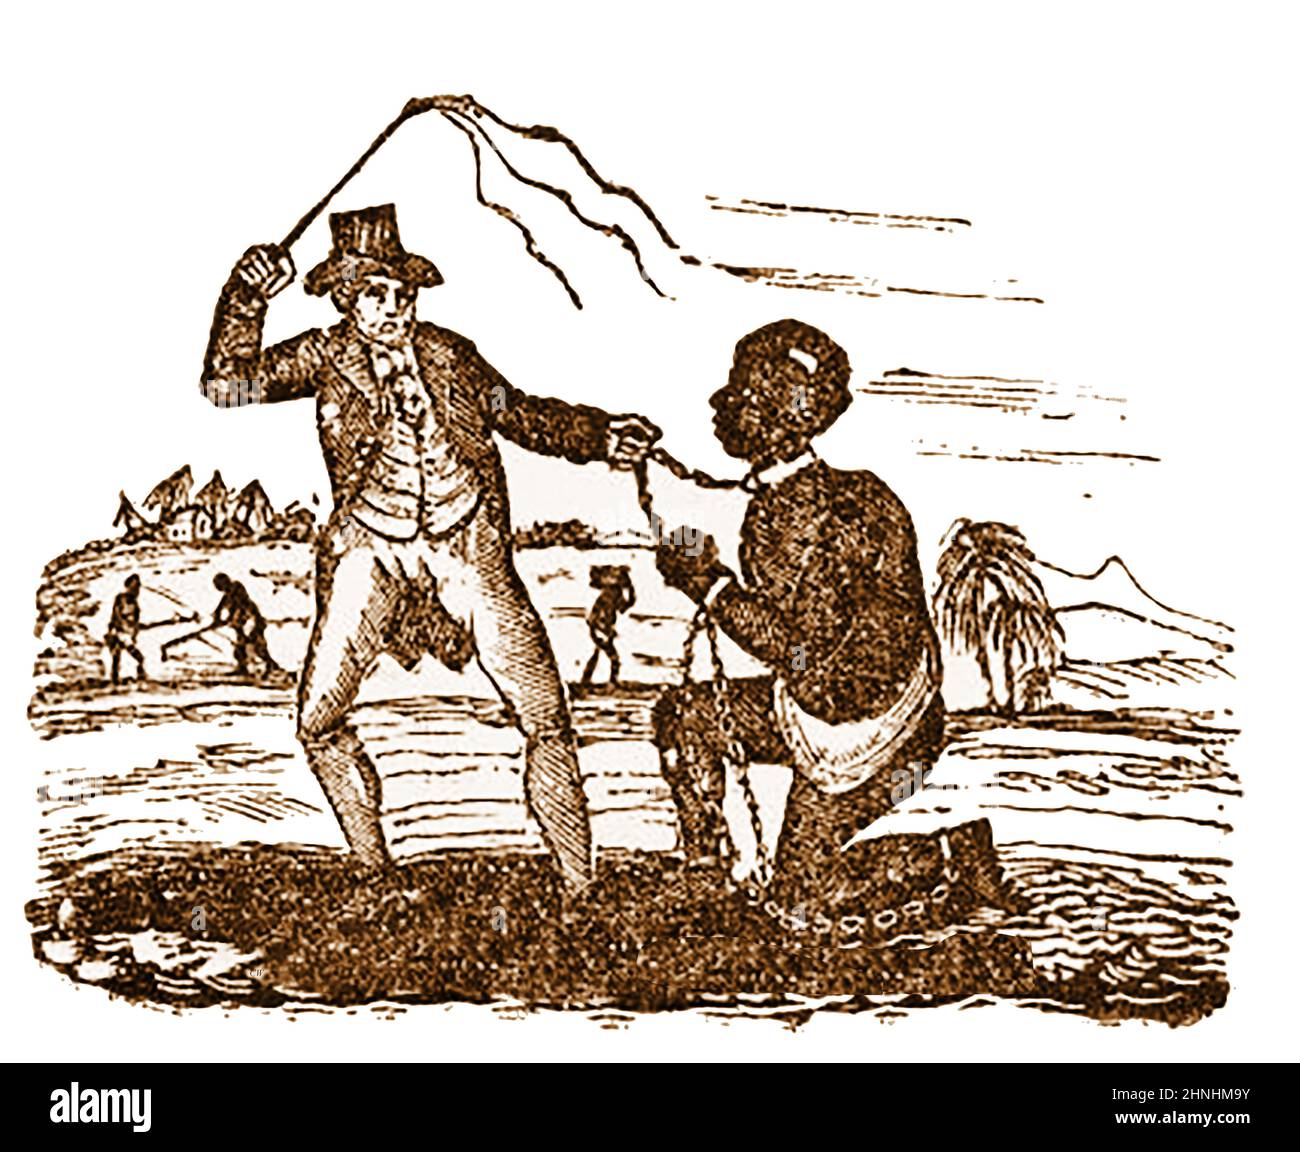 MOVIMENTO ANTI-SCHIAVITÙ - un'incisione dei primi 19th secolo che illustra il maltrattamento degli schiavi in una piantagione. Foto Stock